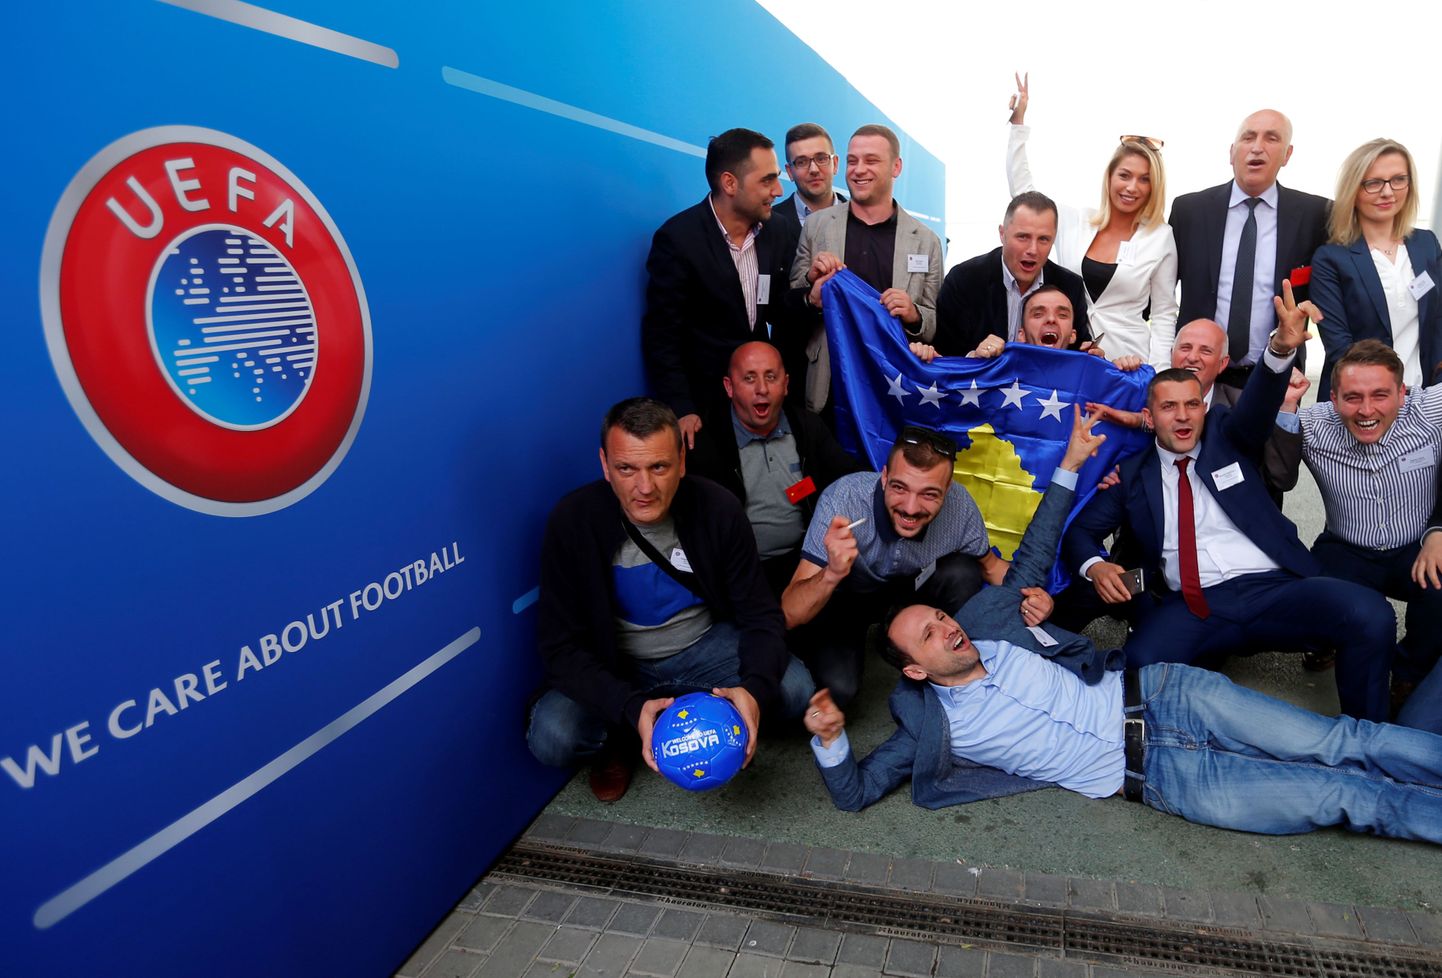 Делегация Косово на конгрессе УЕФА отмечает вхождение в европейскую футбольную семью.